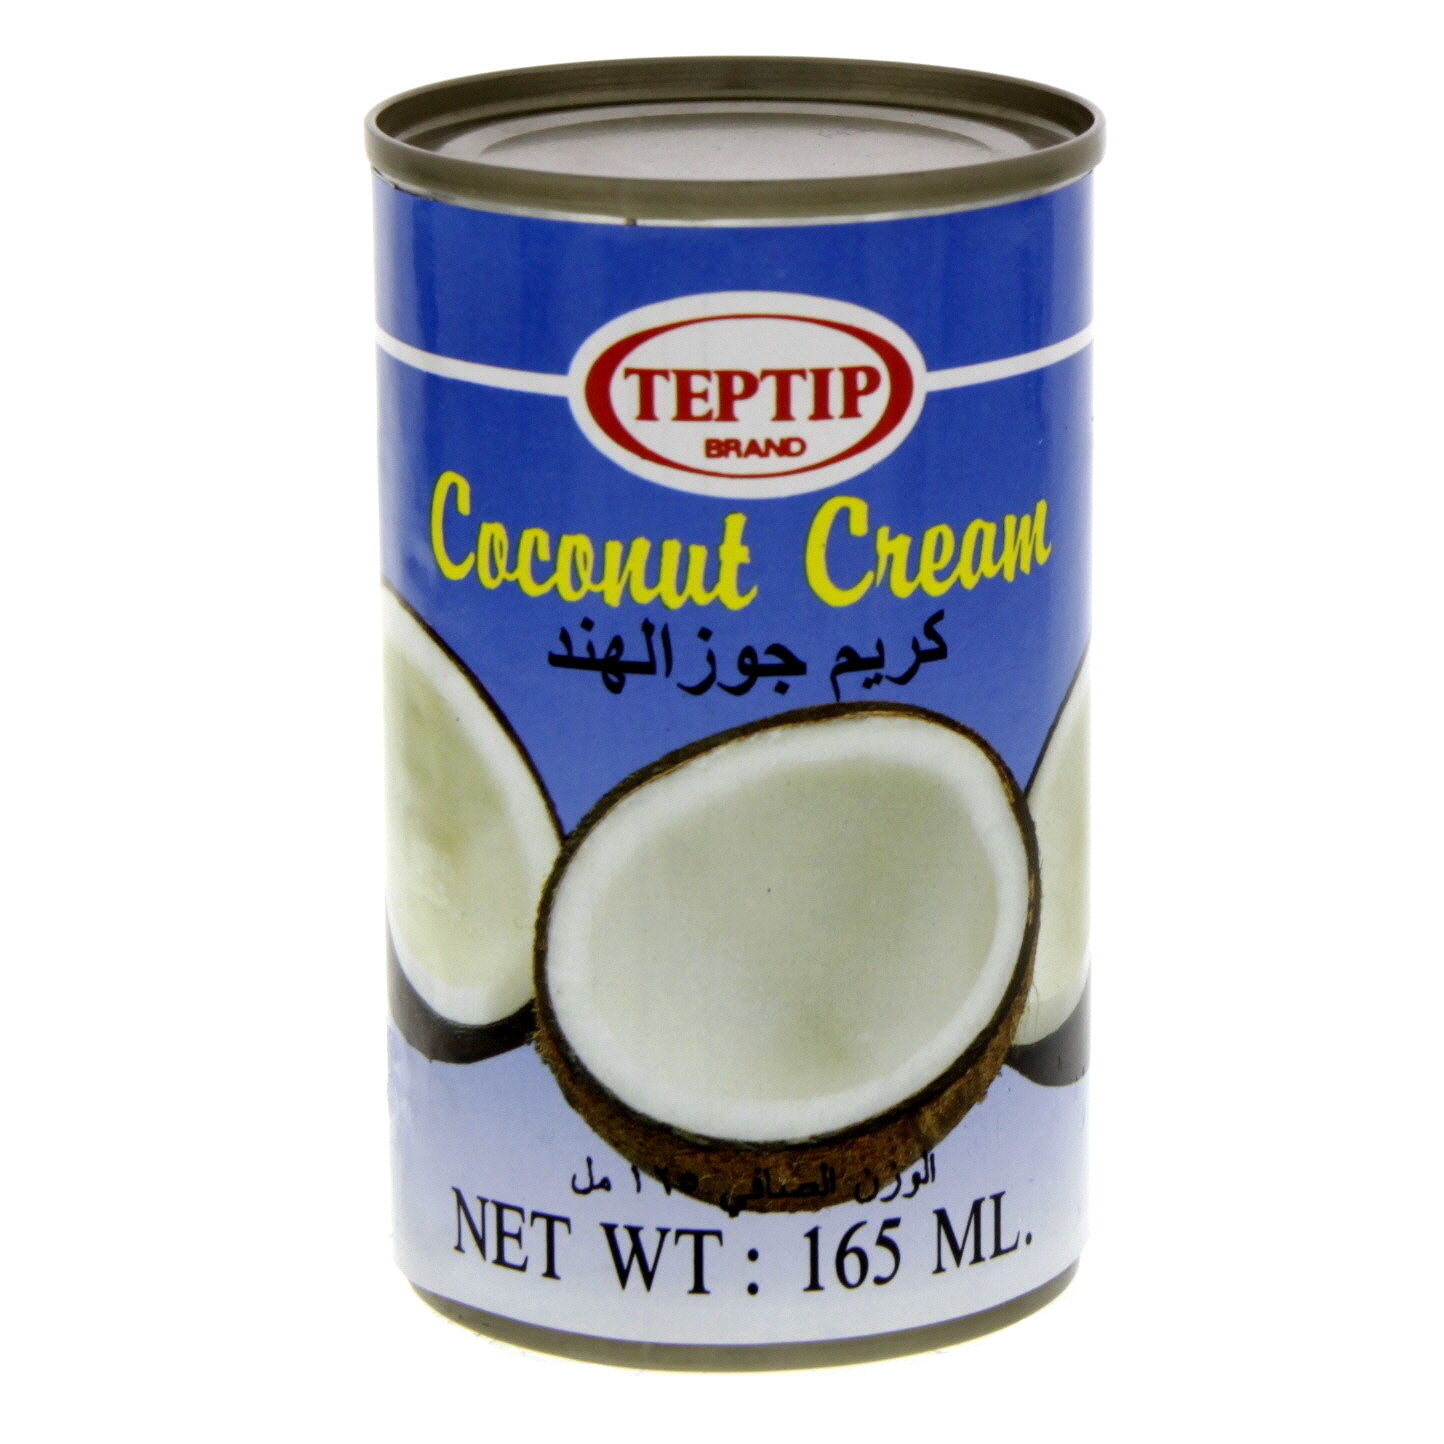 Teptip Coconut Cream 165ml